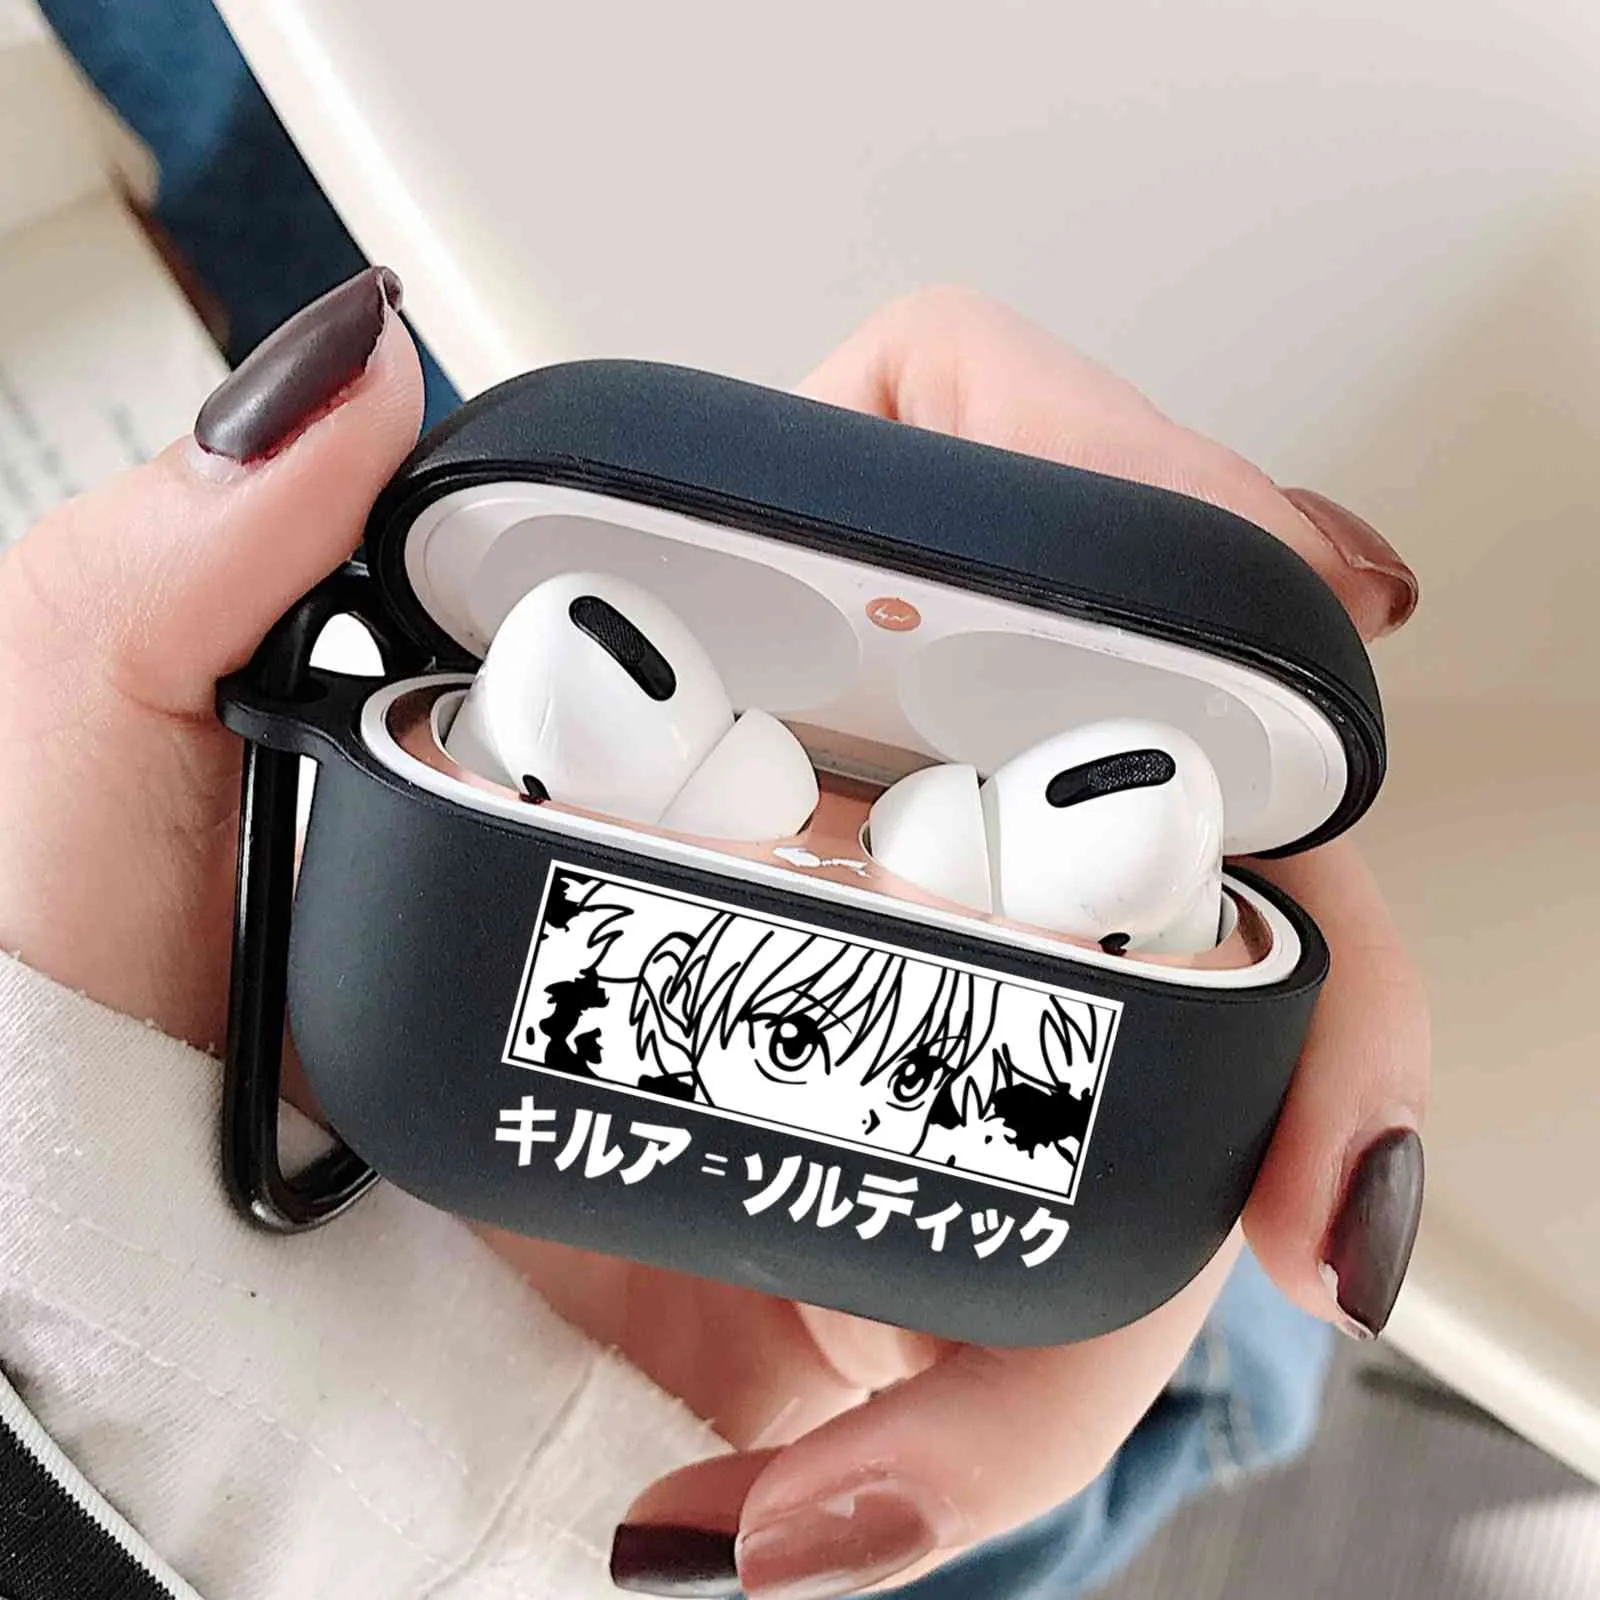 HUNTER X 3 HXH Anime Hisoka Morow Goncase Coque Ecouteurs pour Apple Airpods Pro 2 1 3 Accessoires de protection noir